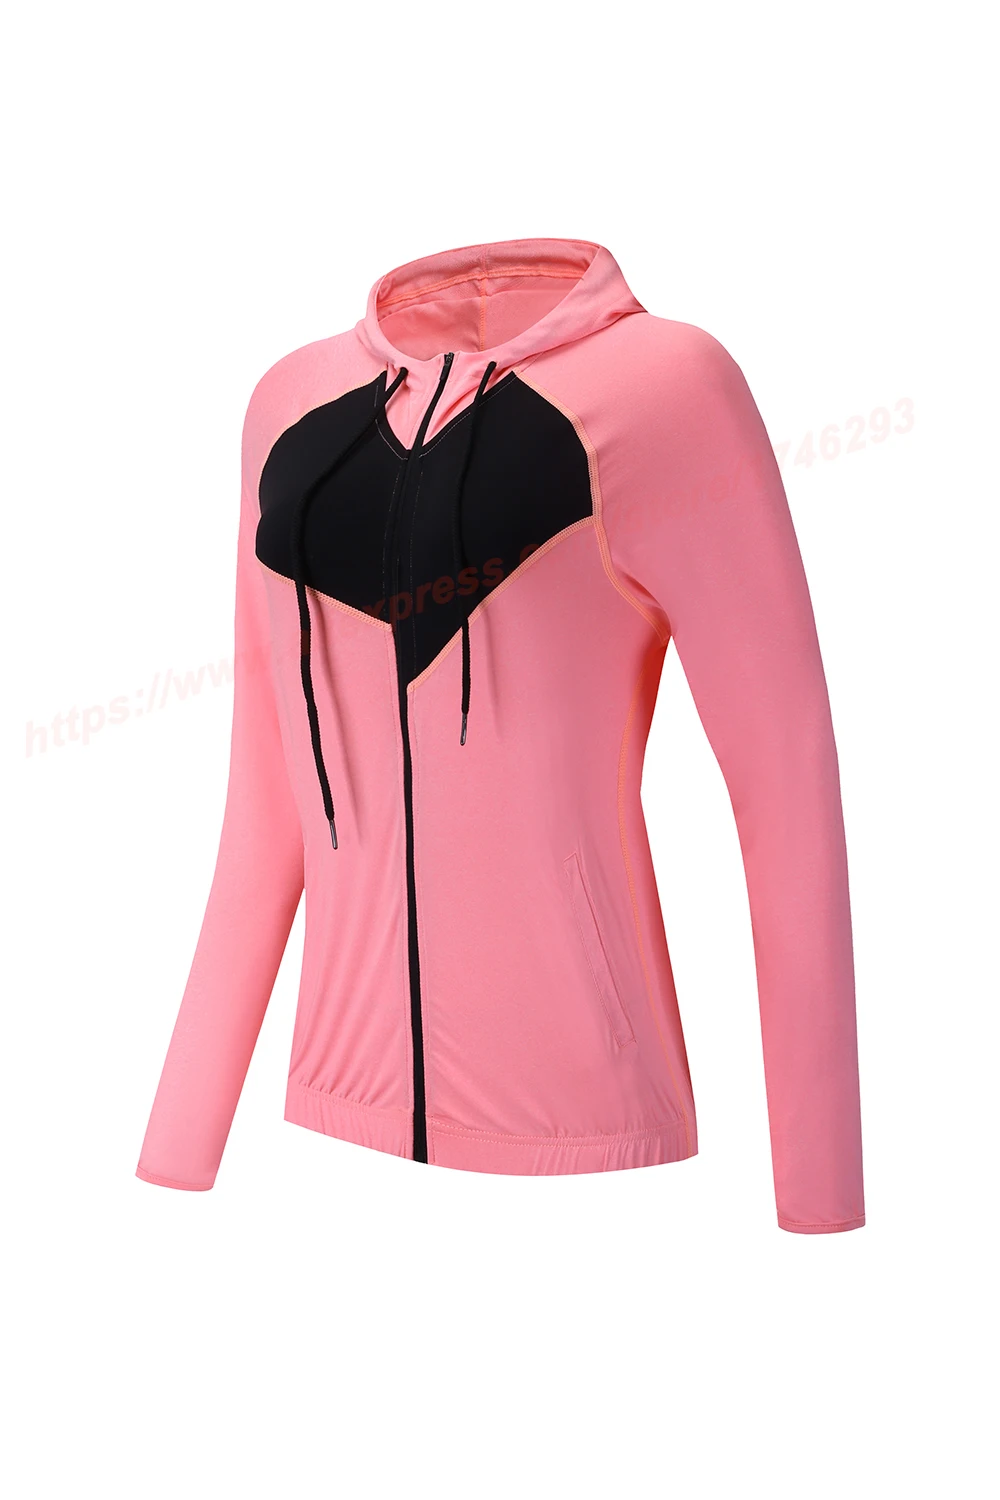 Куртки для бега, спортивные пальто для фитнеса, йоги, пробежек, рубашки на молнии с длинным рукавом для спортзала, быстросохнущие дышащие облегающие топы, женские рубашки